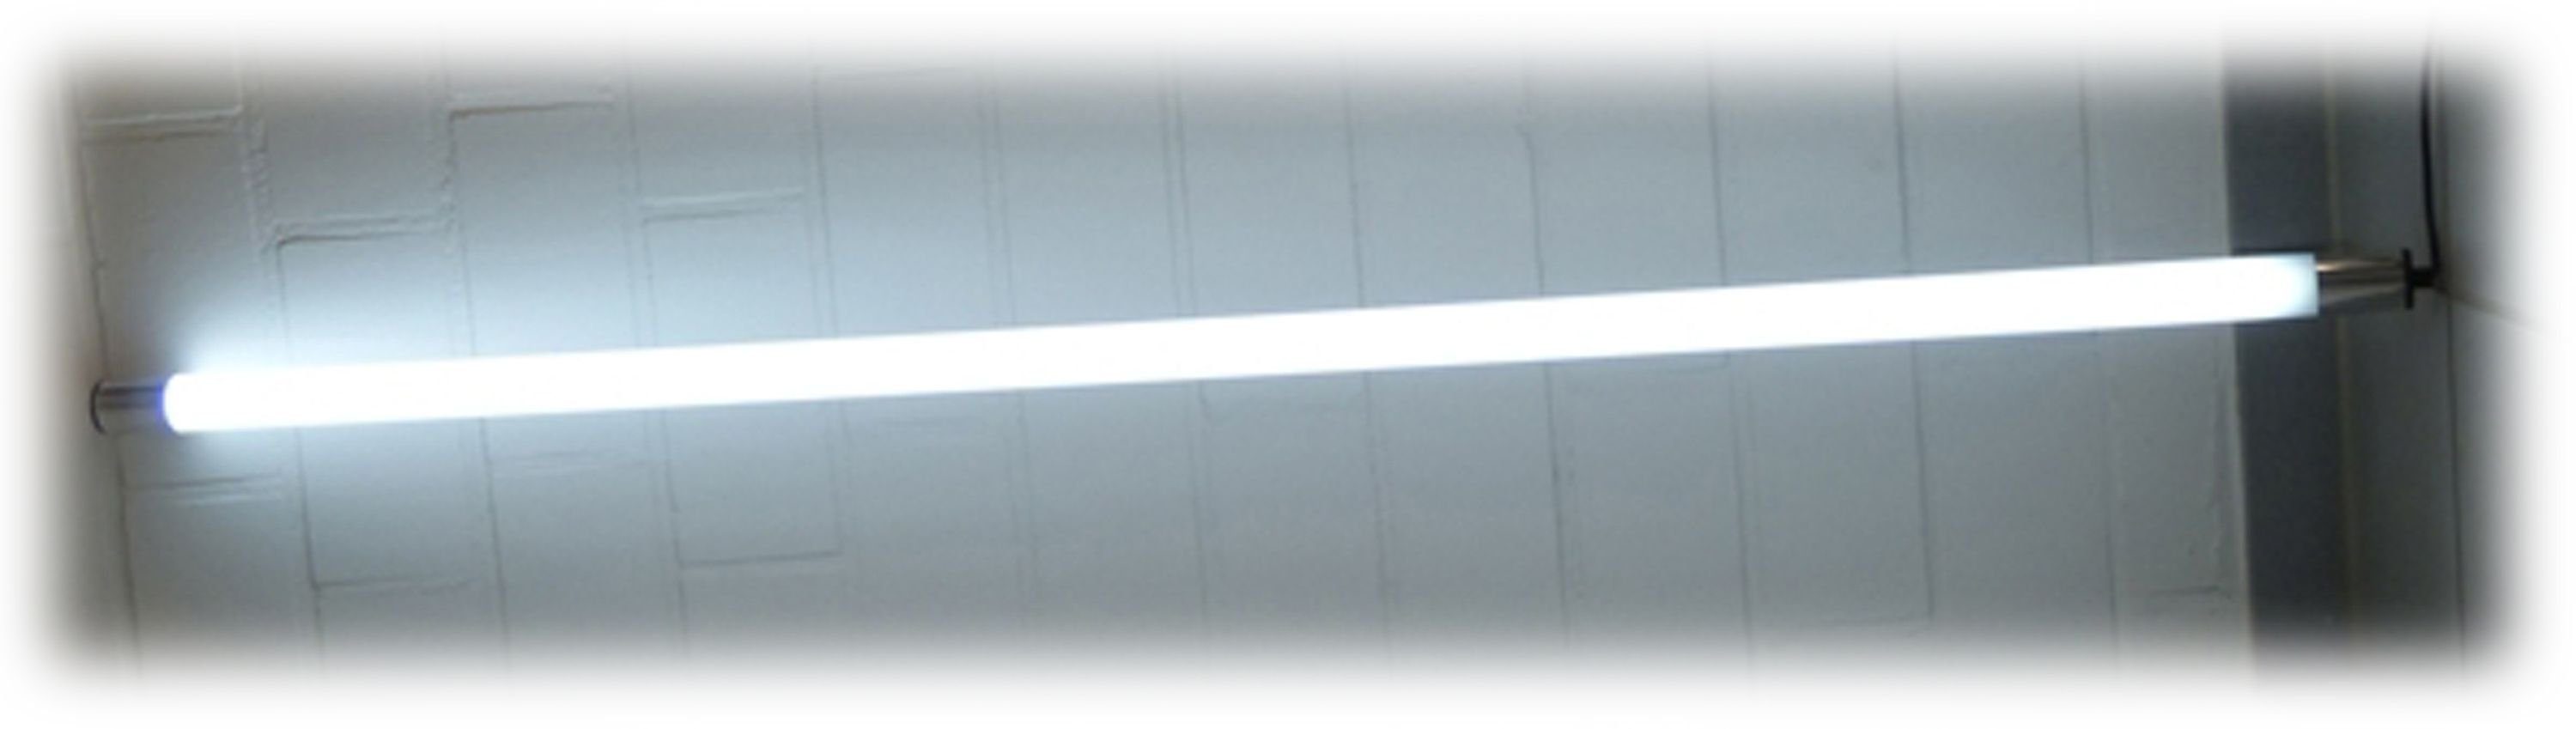 XENON LED Außen-Wandleuchte 1519 Xenon / 153cm Technik, Weiß Kalt mit LED Leuchte Weiß, LED Kalt Gabionen Kunststoff-Röhre